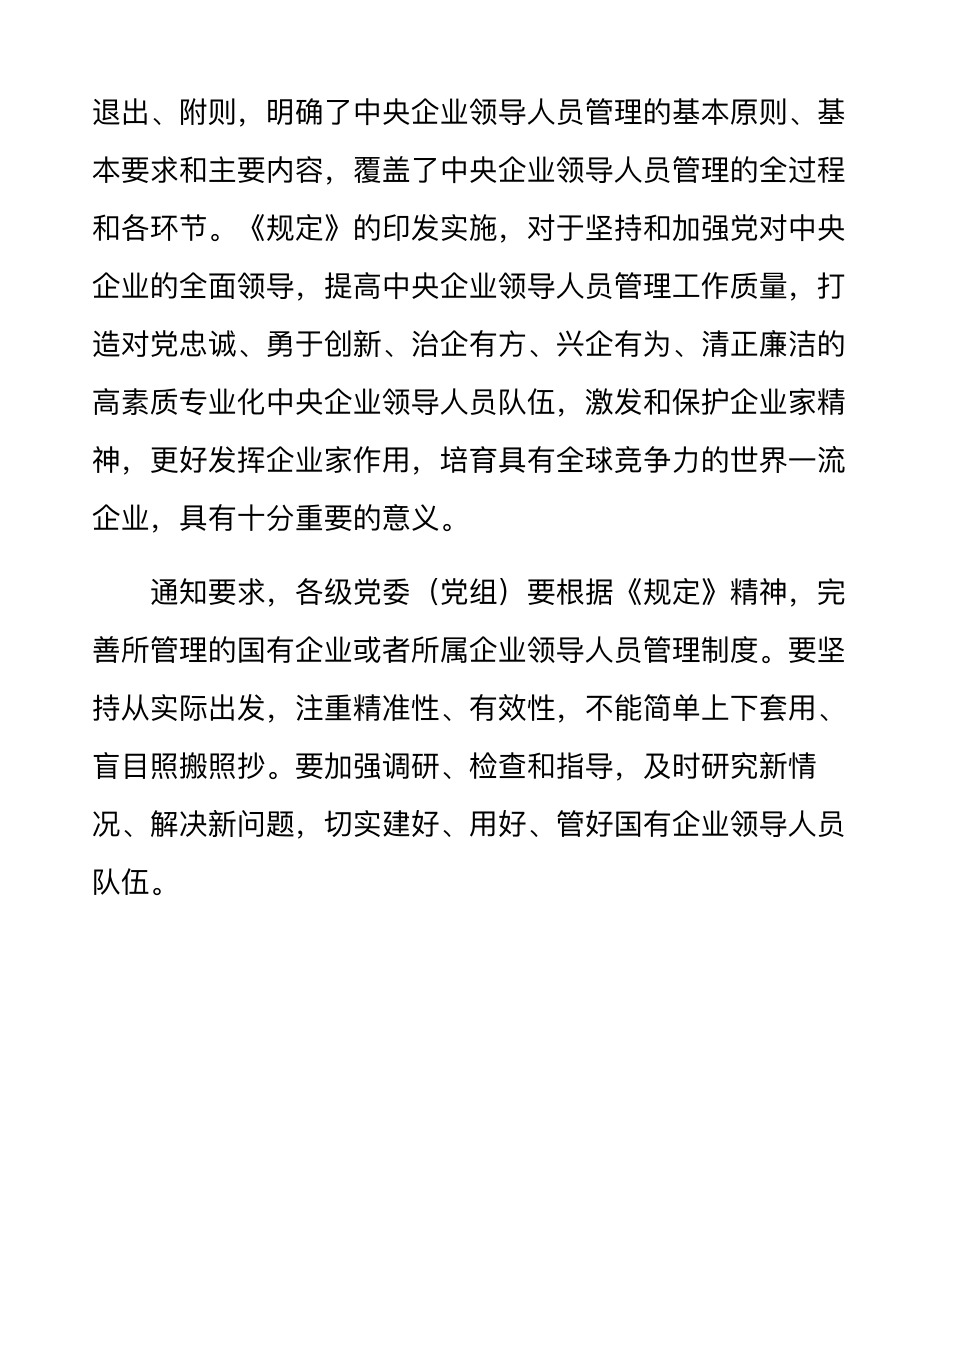 中办国办印发《中央企业领导人员管理规定》